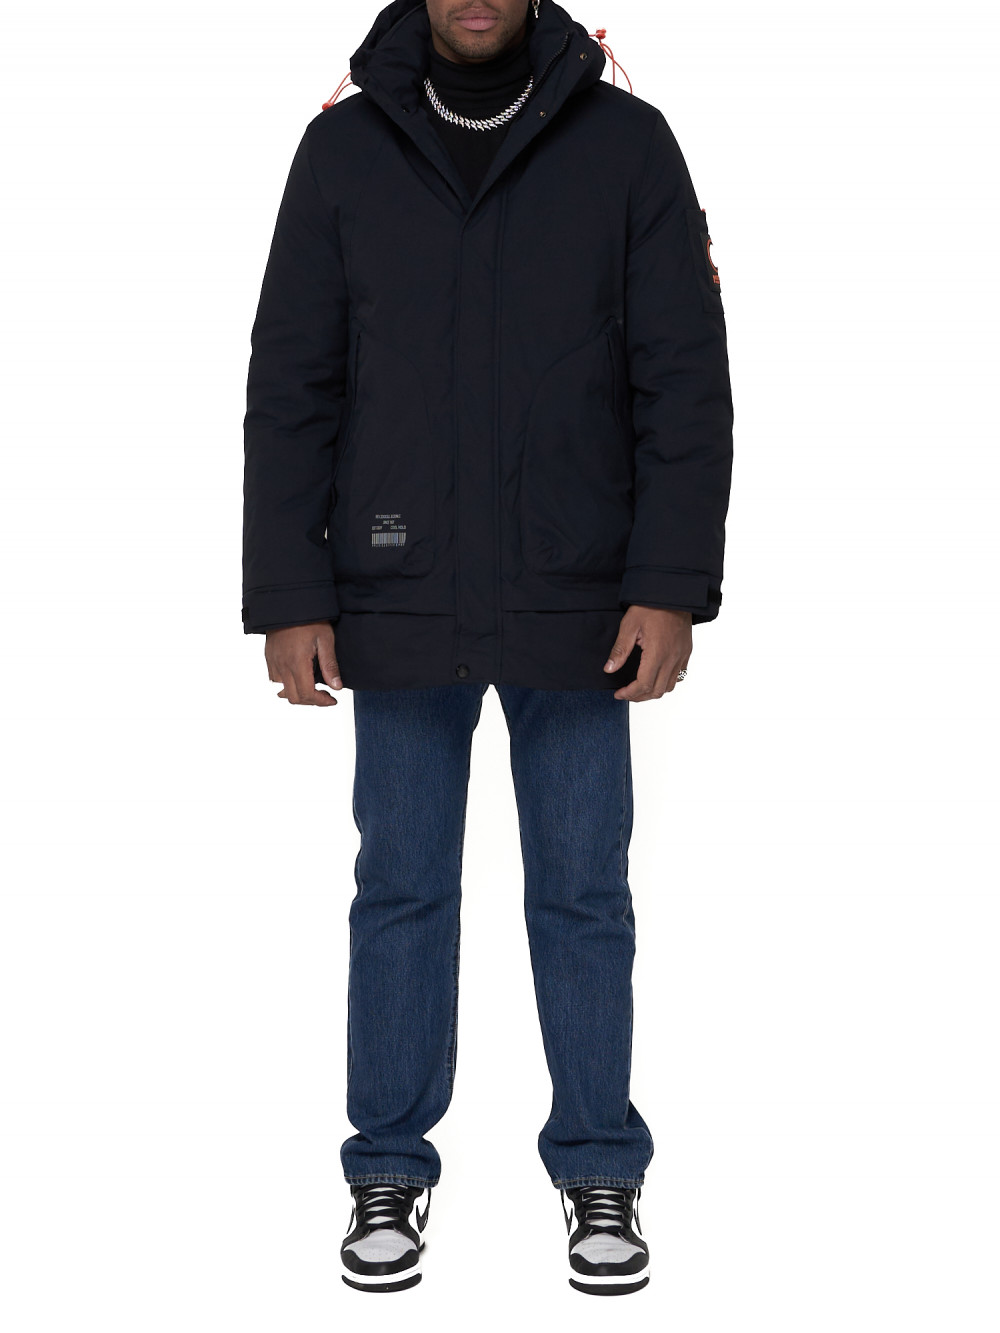 Спортивная куртка мужская NoBrand AD90016 синяя M